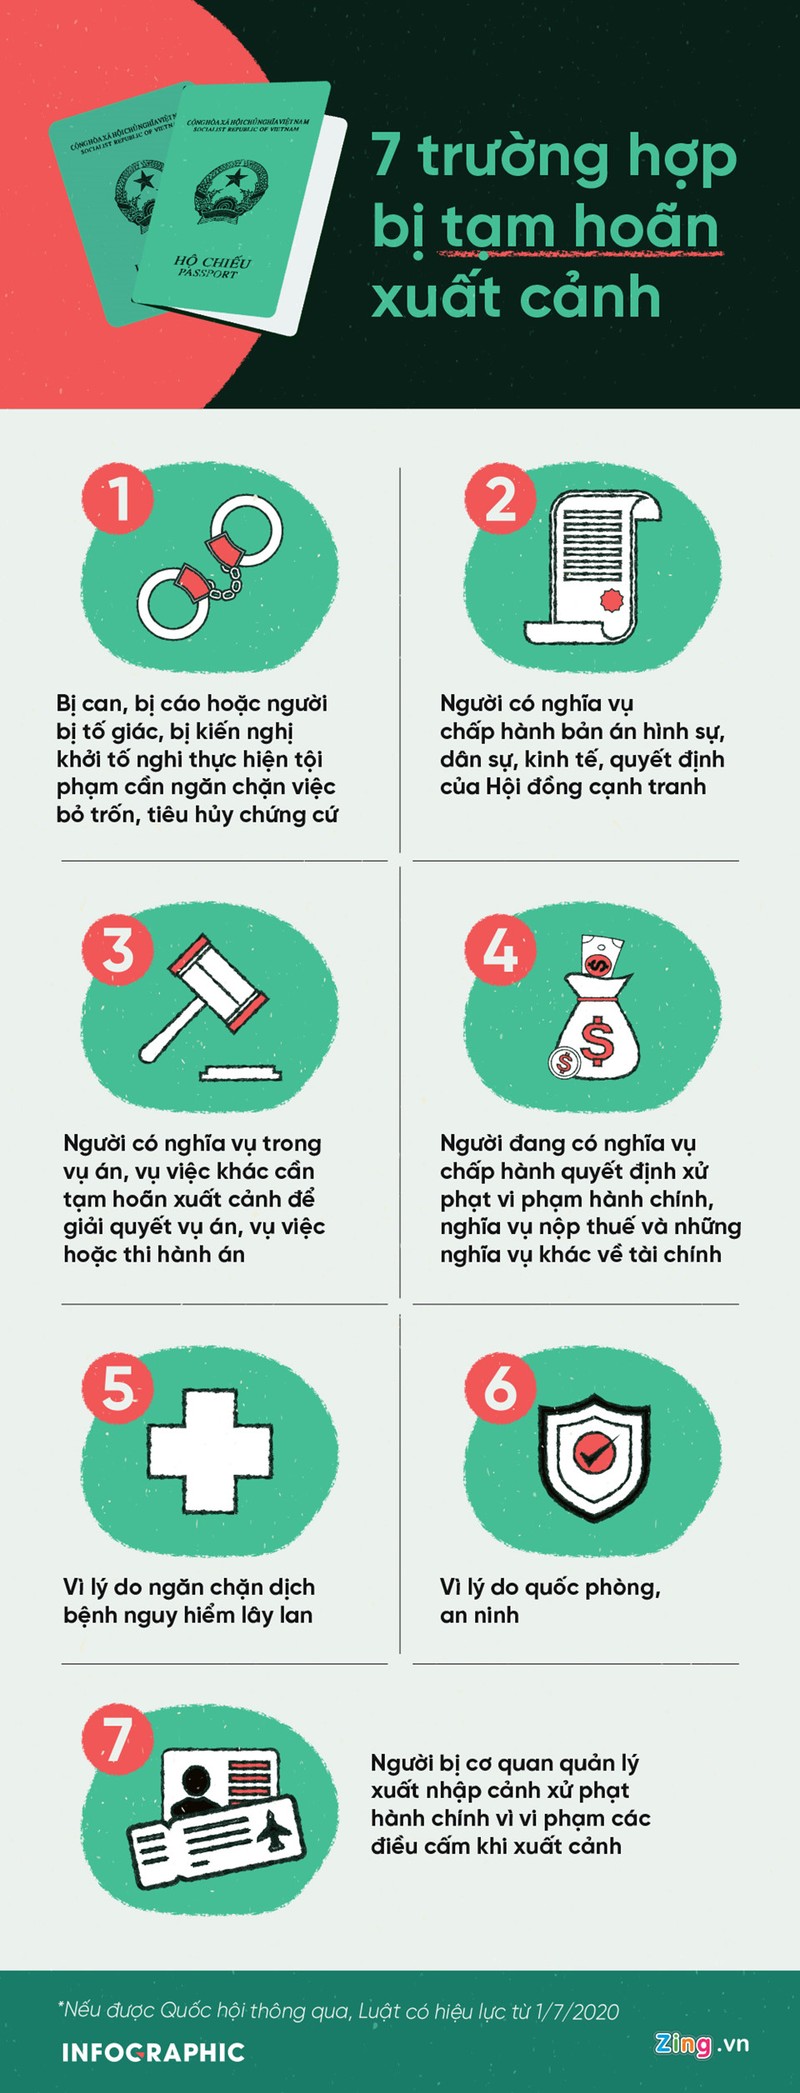 Infographic: 7 truong hop bi Bo Cong an de nghi tam hoan xuat canh